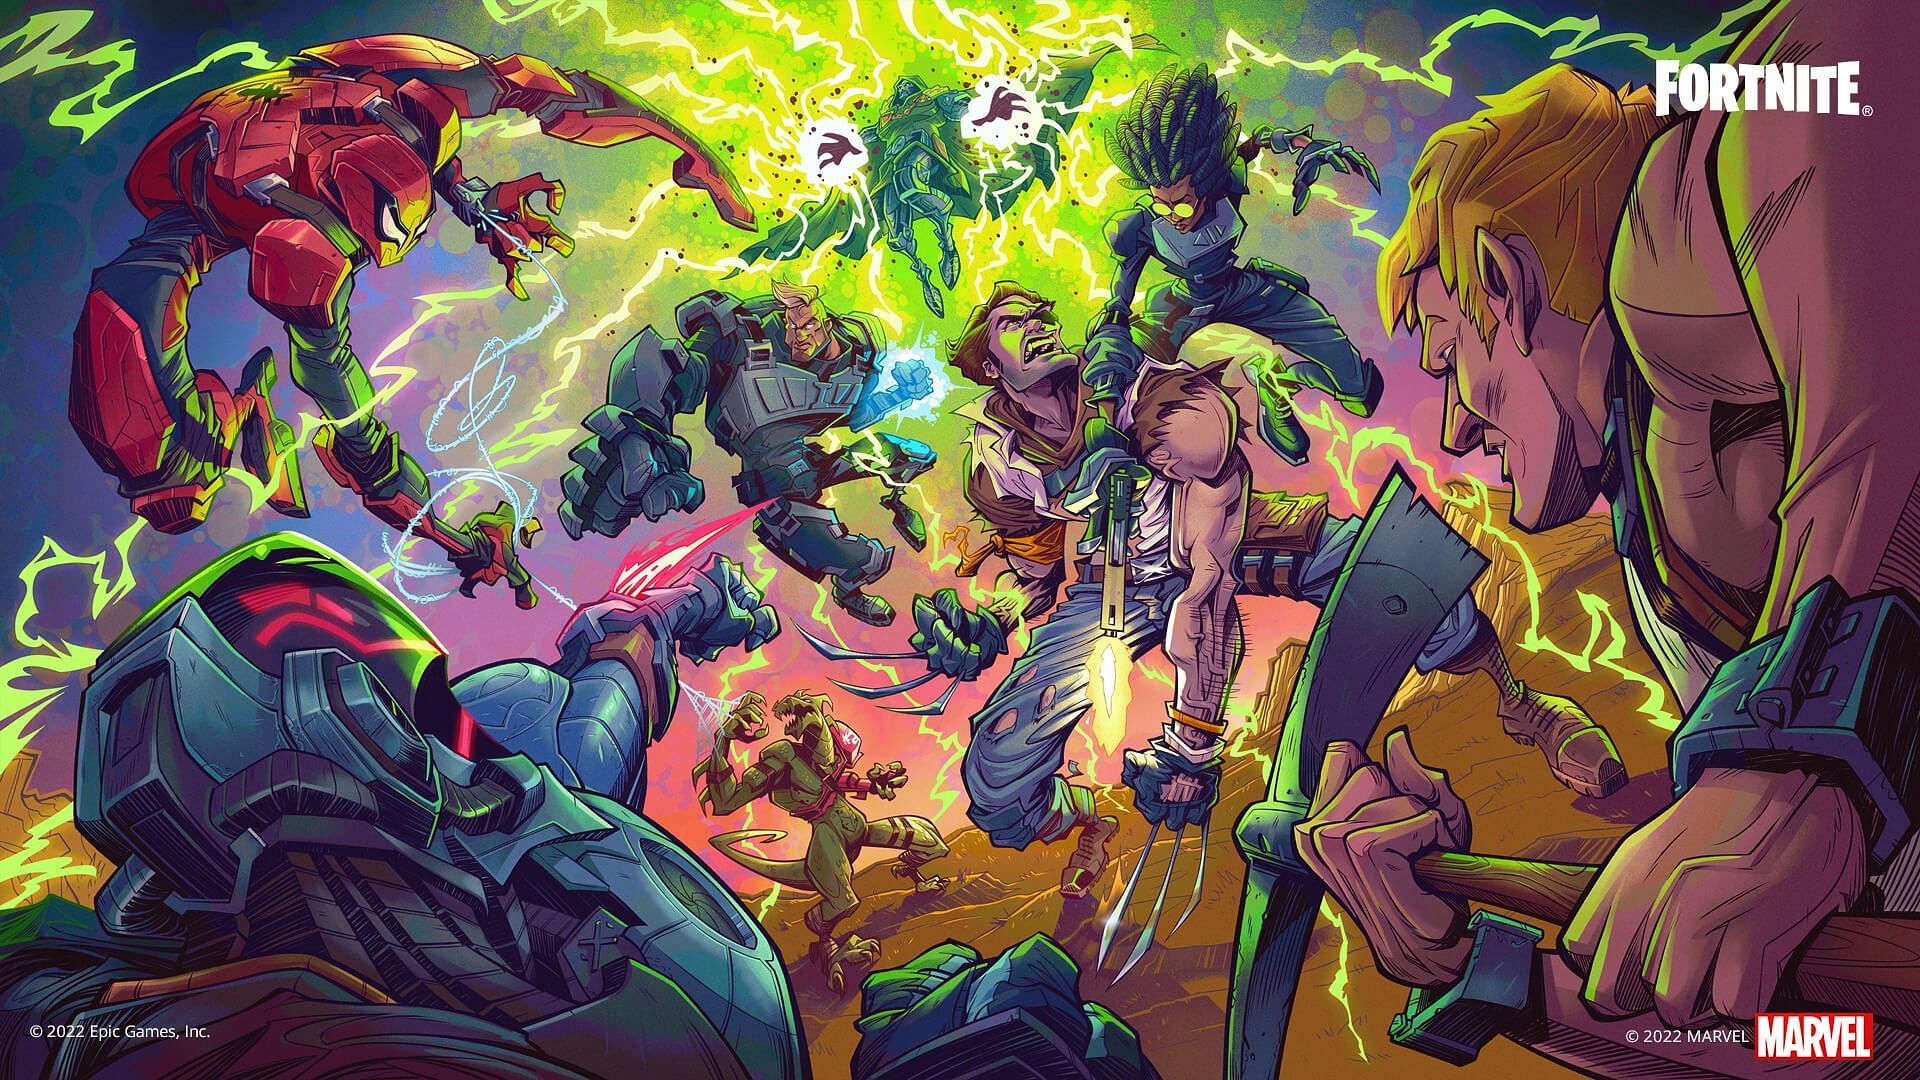 Bandes dessinées Fortnite x Marvel Zero War (Image via Epic Games)